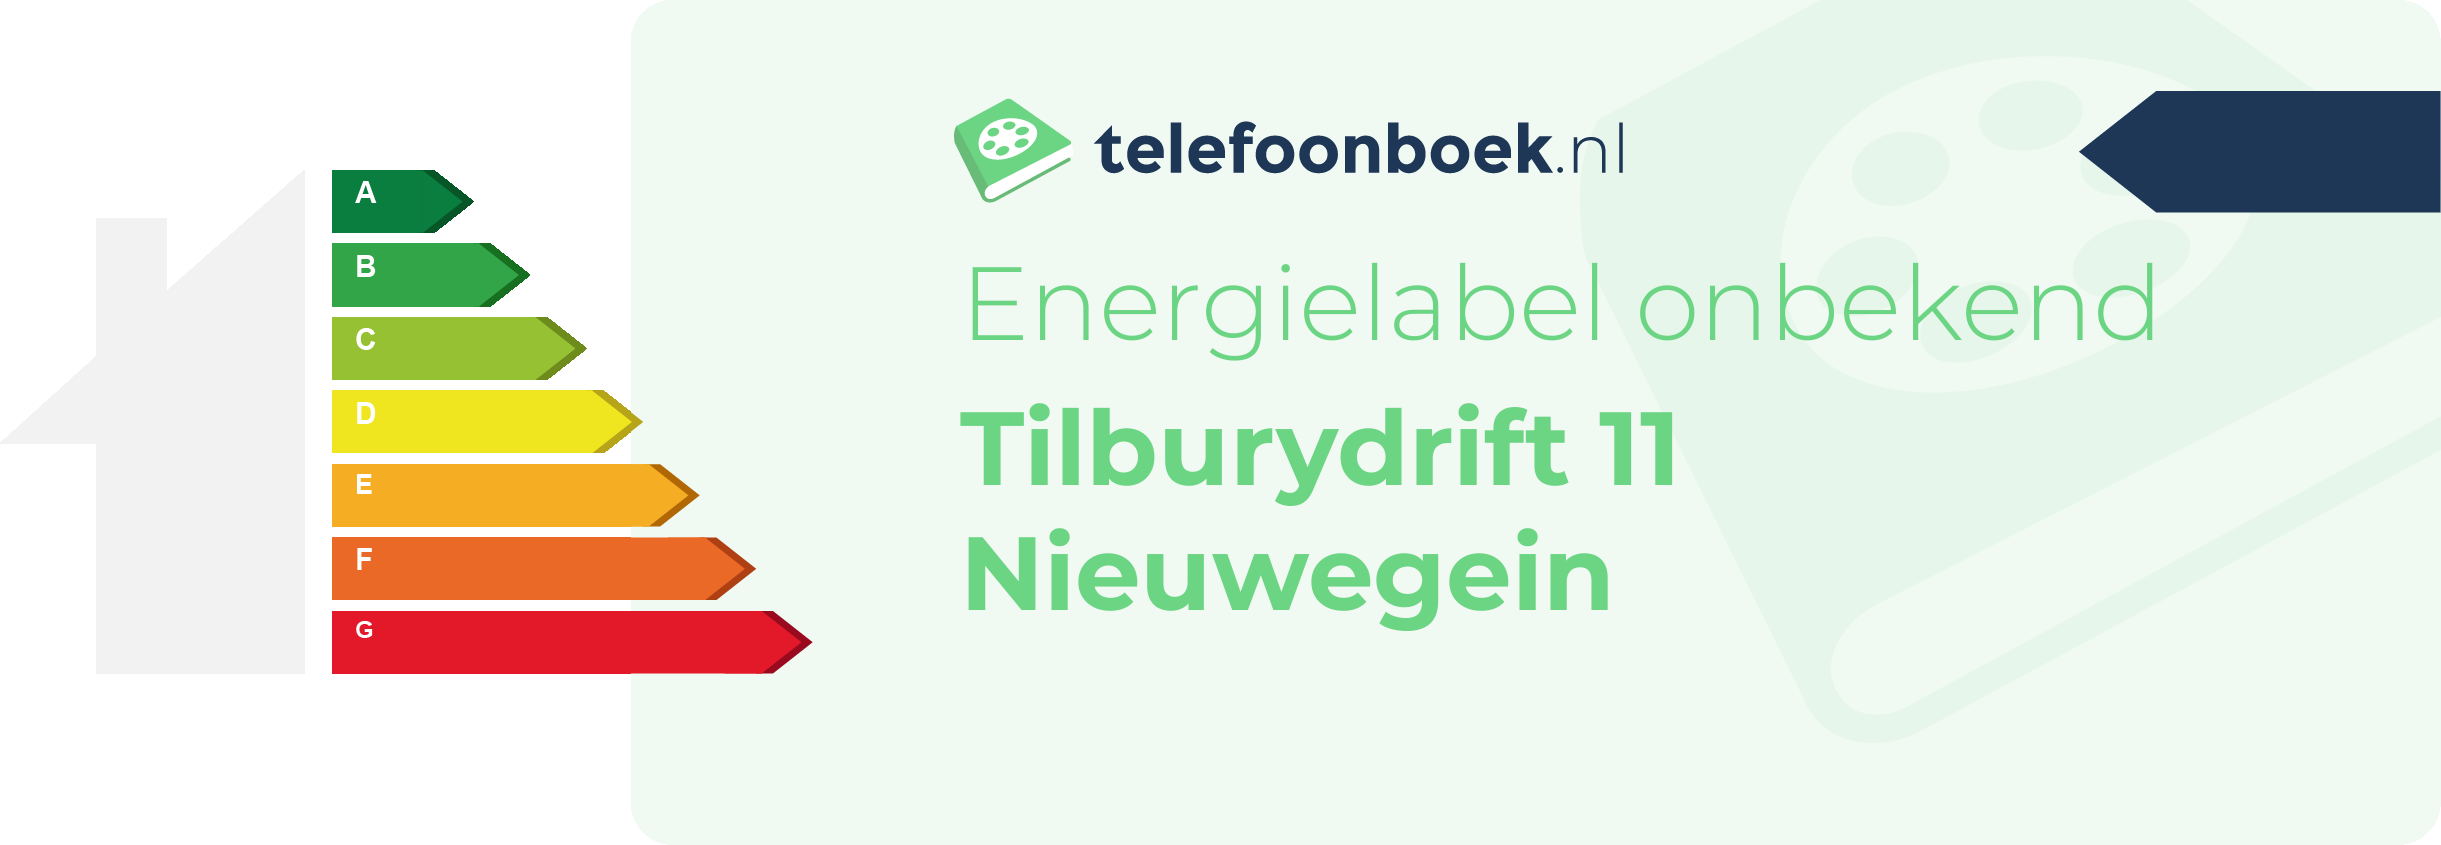 Energielabel Tilburydrift 11 Nieuwegein